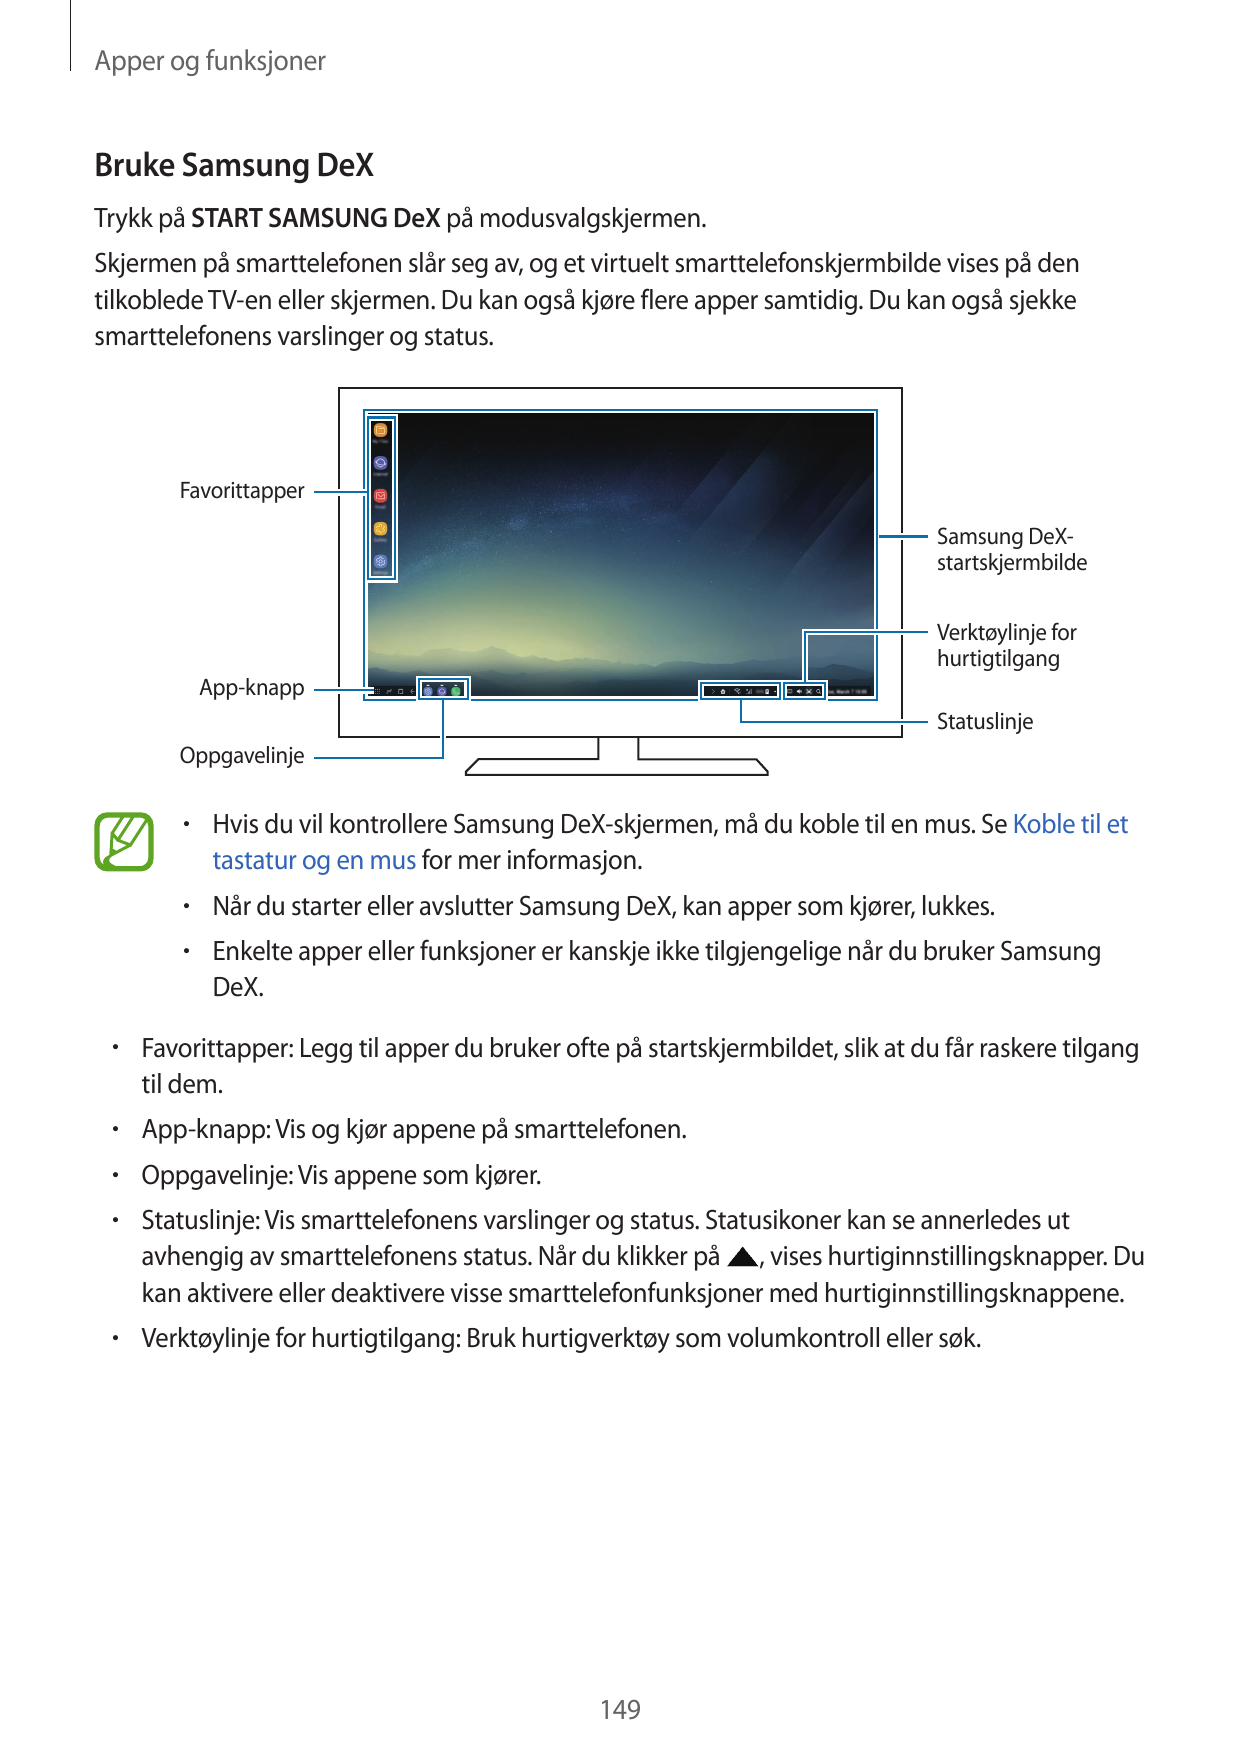 Apper og funksjonerBruke Samsung DeXTrykk på START SAMSUNG DeX på modusvalgskjermen.Skjermen på smarttelefonen slår seg av, og e